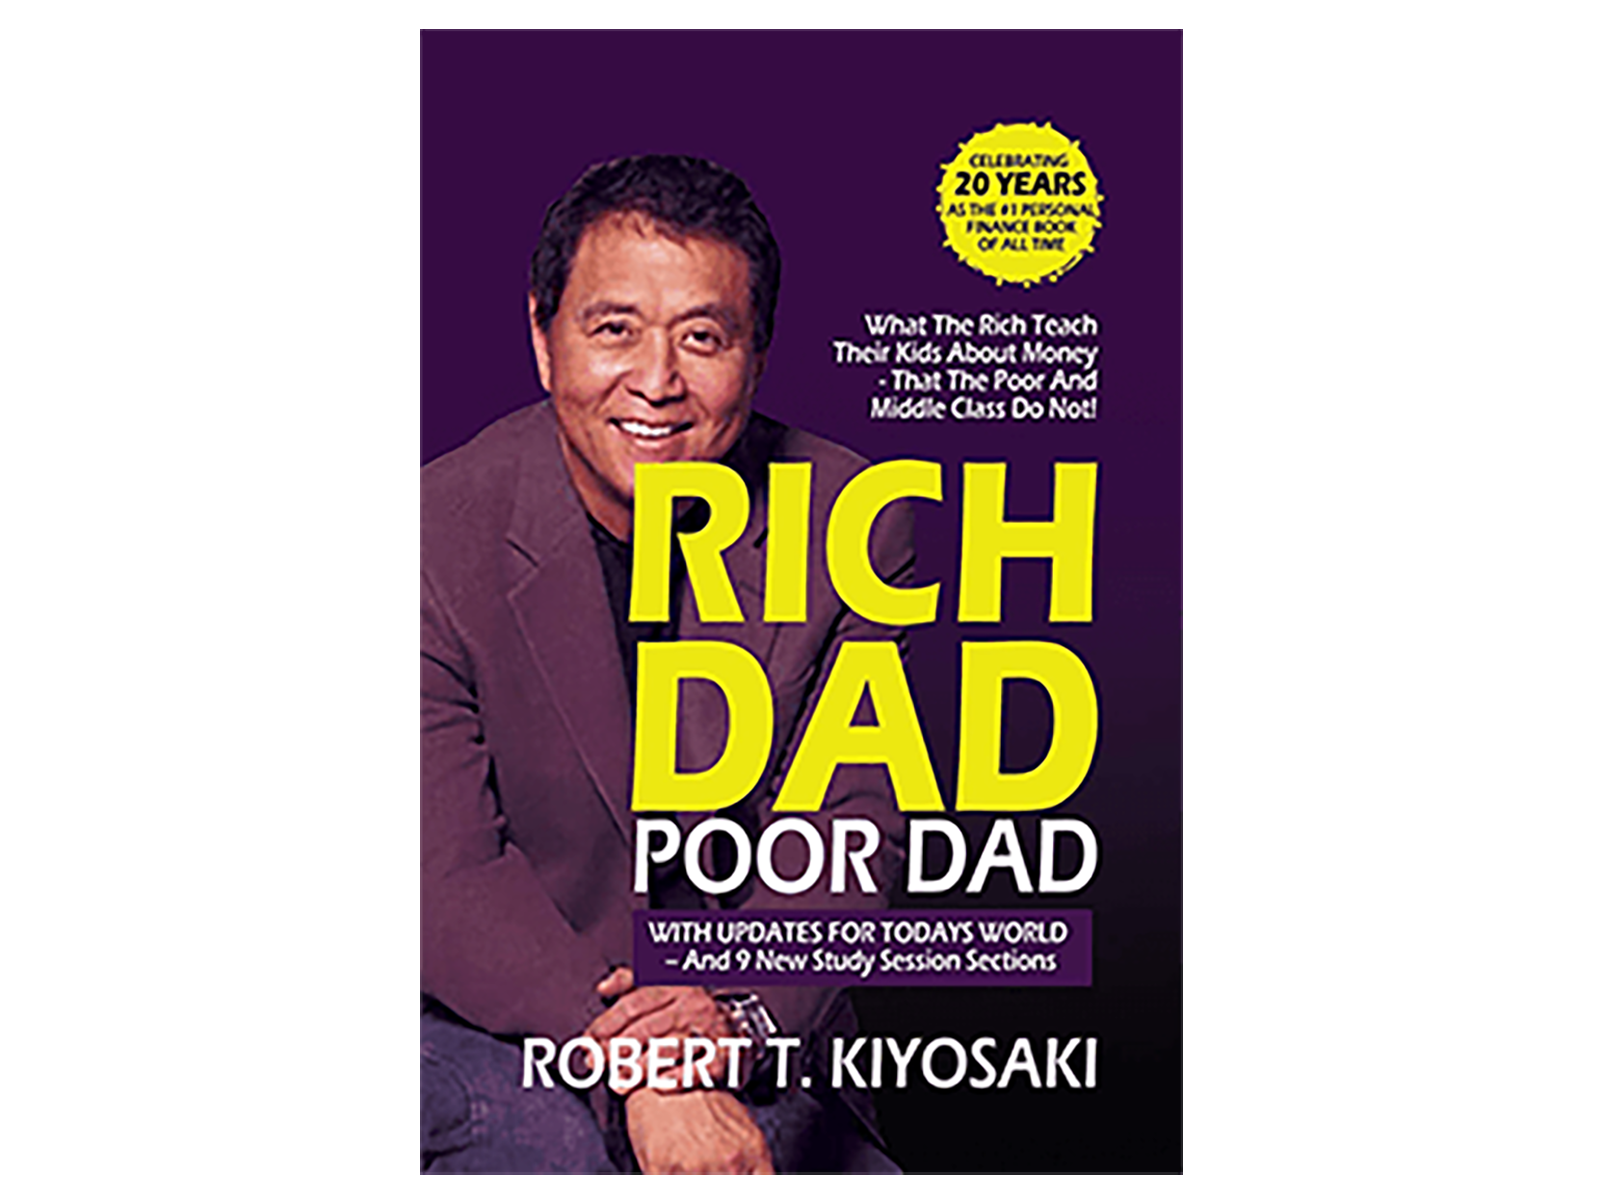 Rich Dad, Poor Dad’ by Robert Kiyosaki